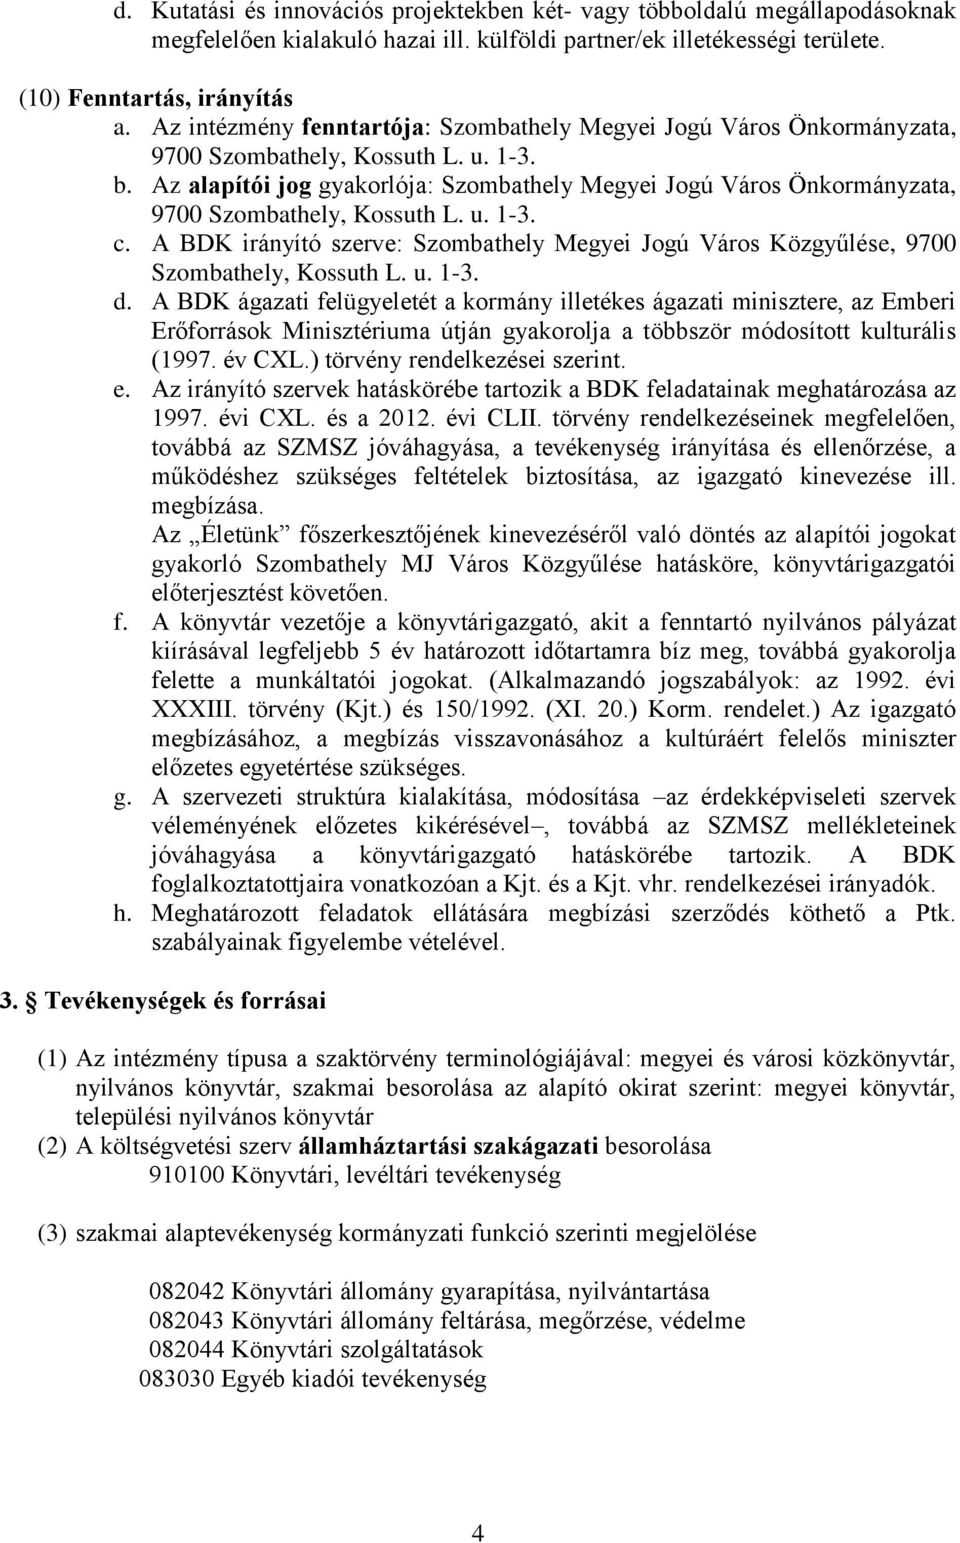 Az alapítói jog gyakorlója: Szombathely Megyei Jogú Város Önkormányzata, 9700 Szombathely, Kossuth L. u. 1-3. c.